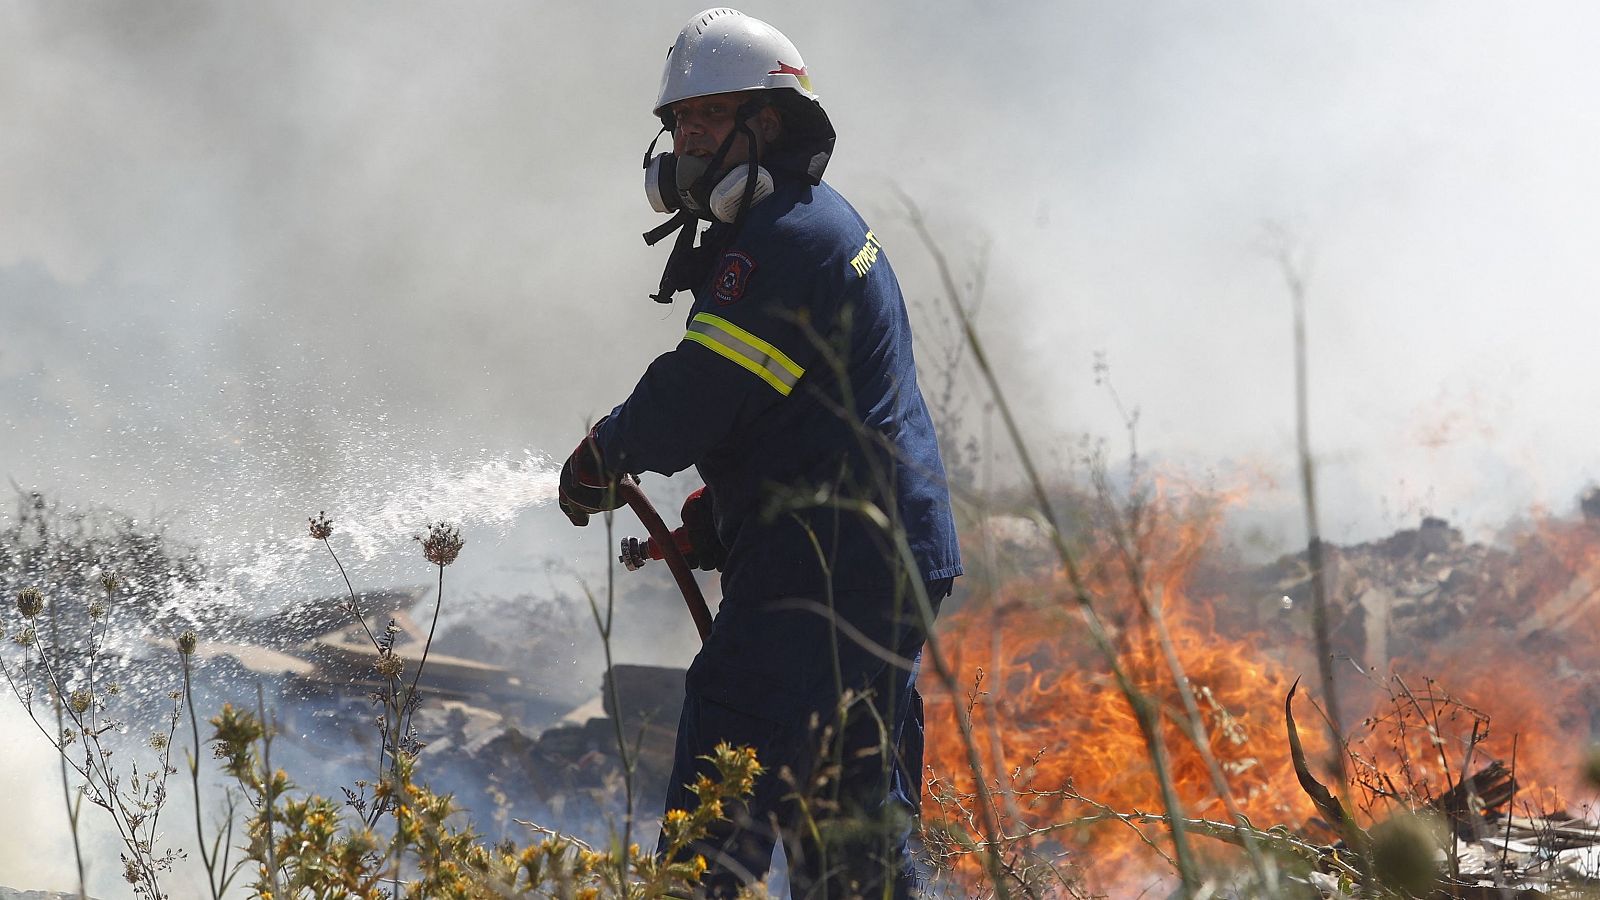 Detenidas en Grecia 13 personas por lanzar supuestamente artefactos de pirotecnia causando el incendio en la isla de Hydra